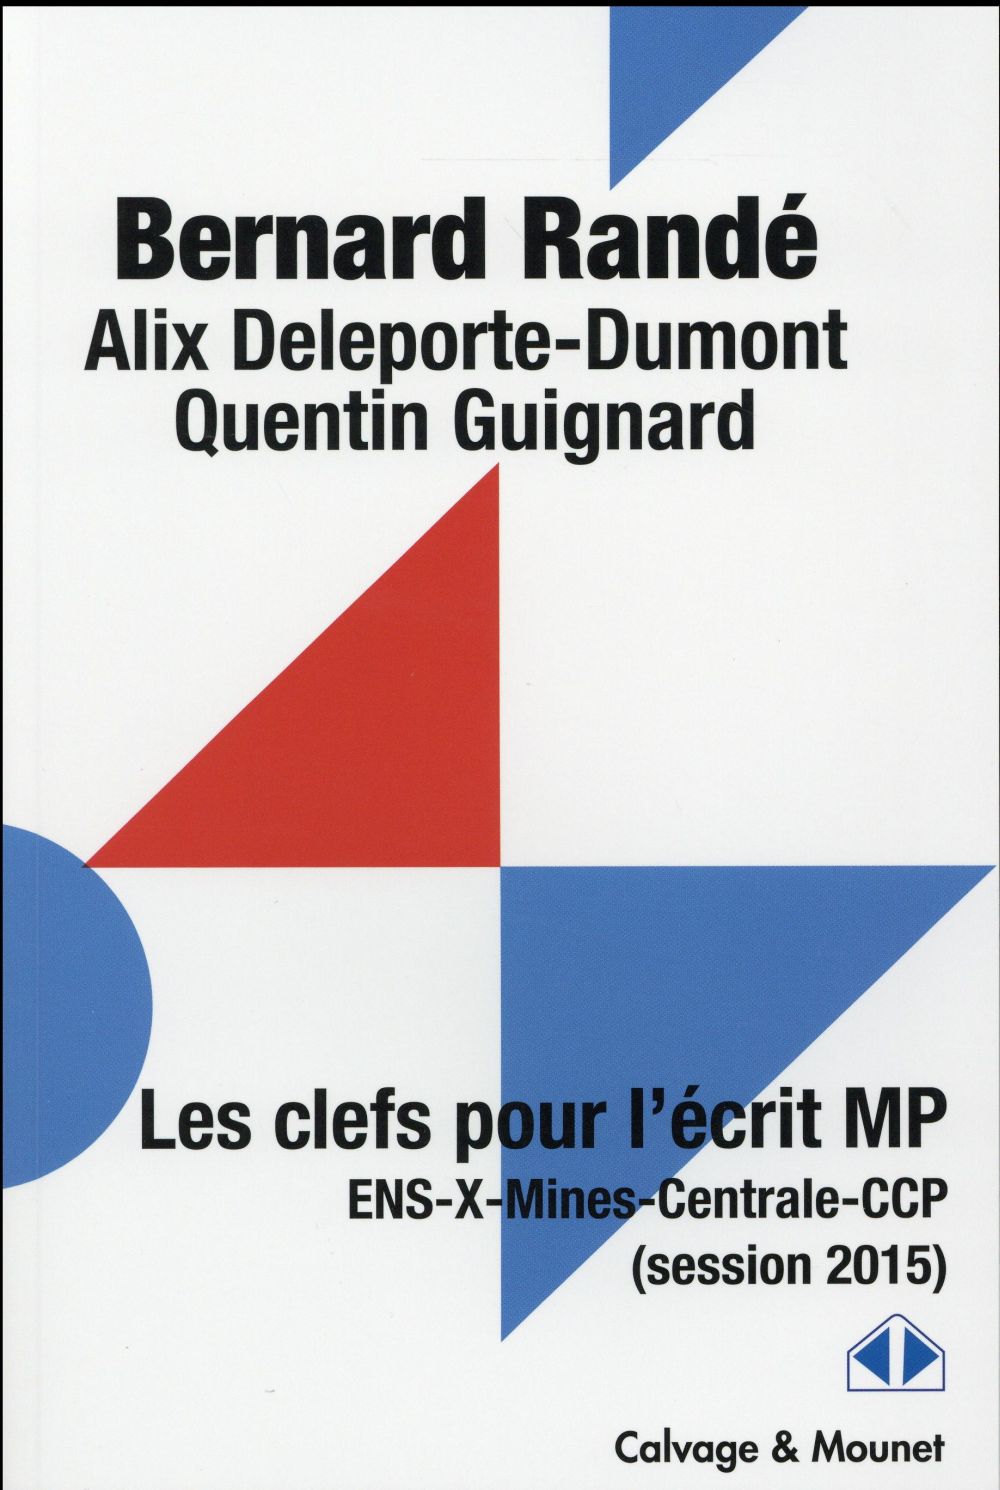 LES CLEFS POUR L'ECRIT MP - ENS-X-MINES-CENTRALE-CCP (SESSION 2015)